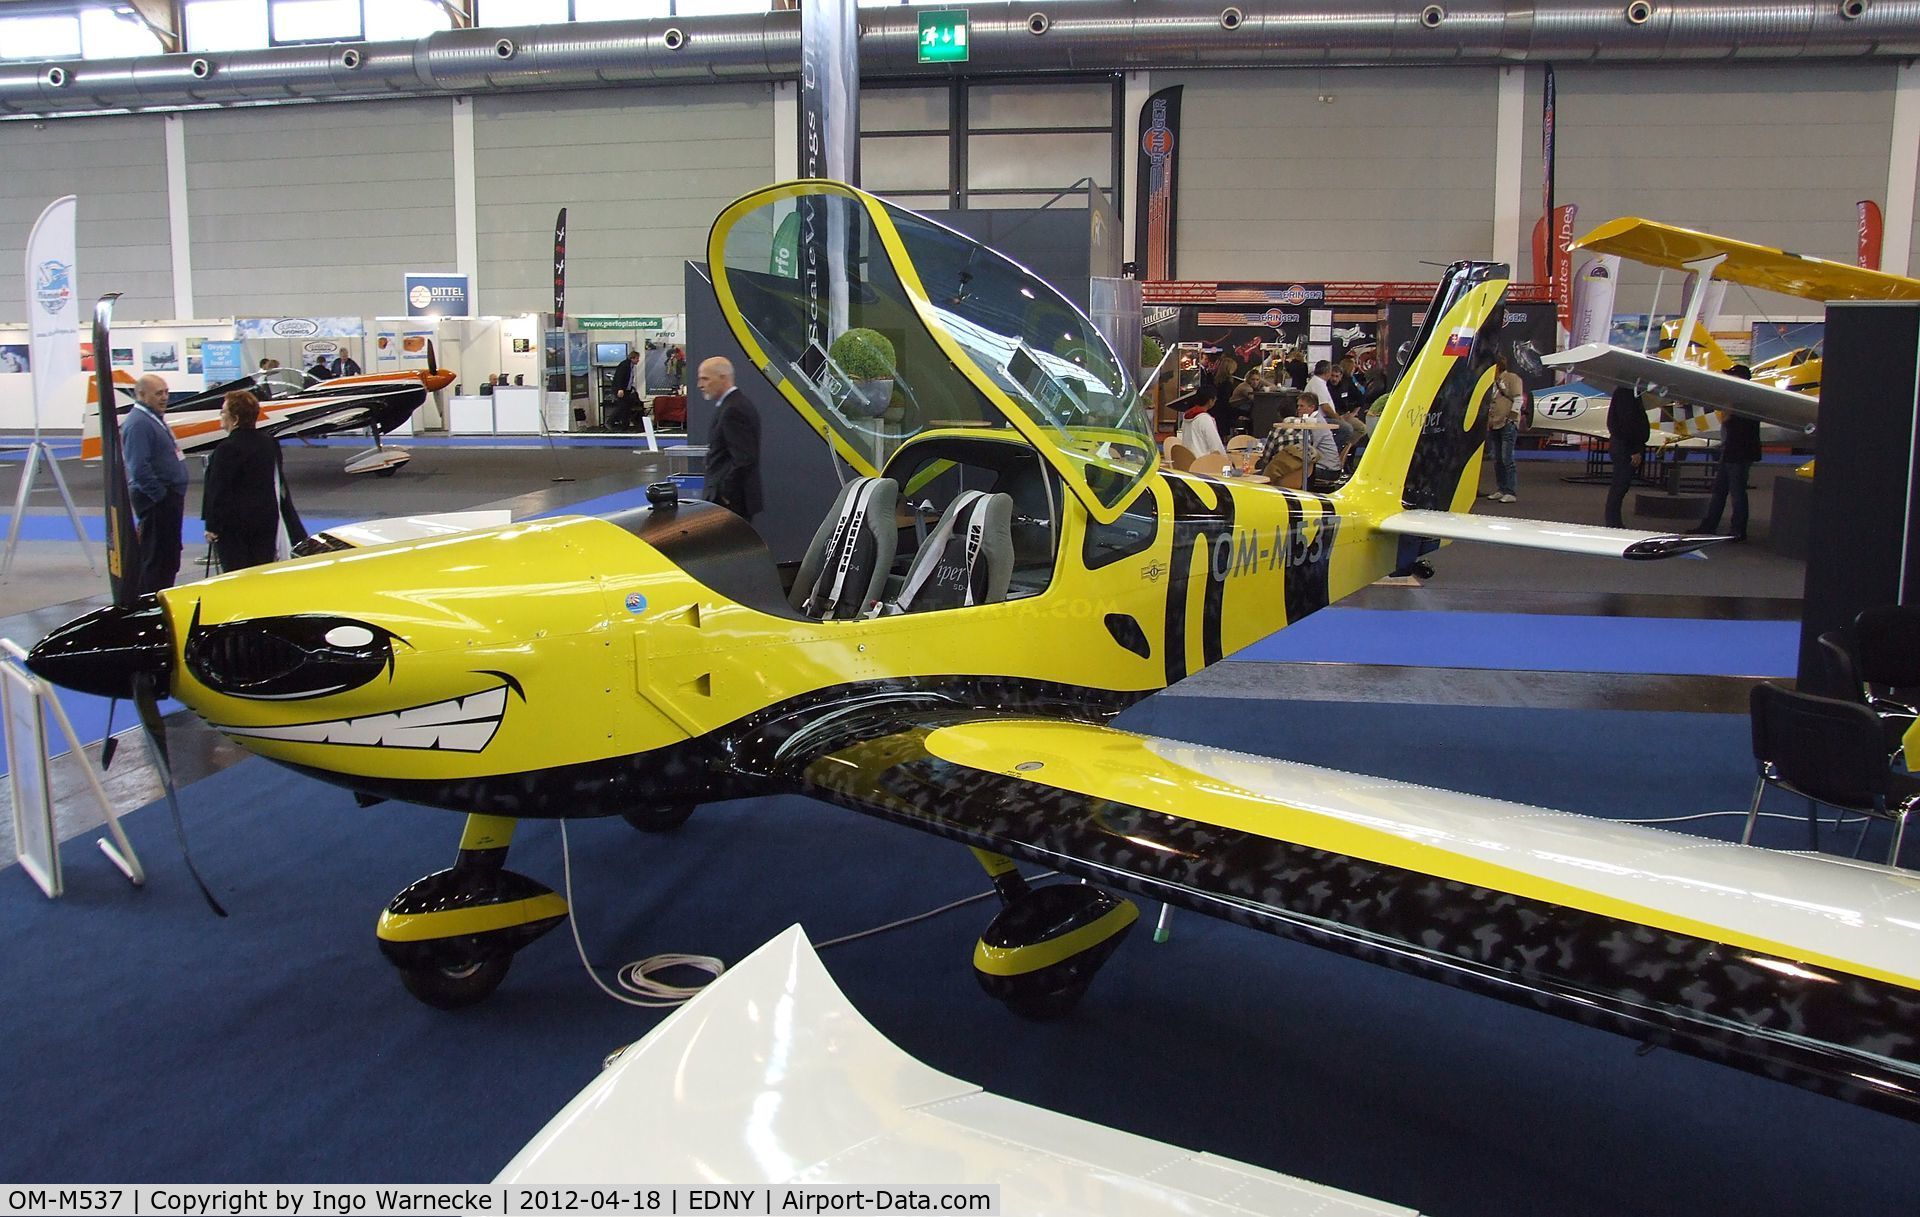 OM-M537, Tomark Aero Viper SD-4 C/N Not found OM-M537, Tomark Viper SD-4 at the AERO 2012, Friedrichshafen